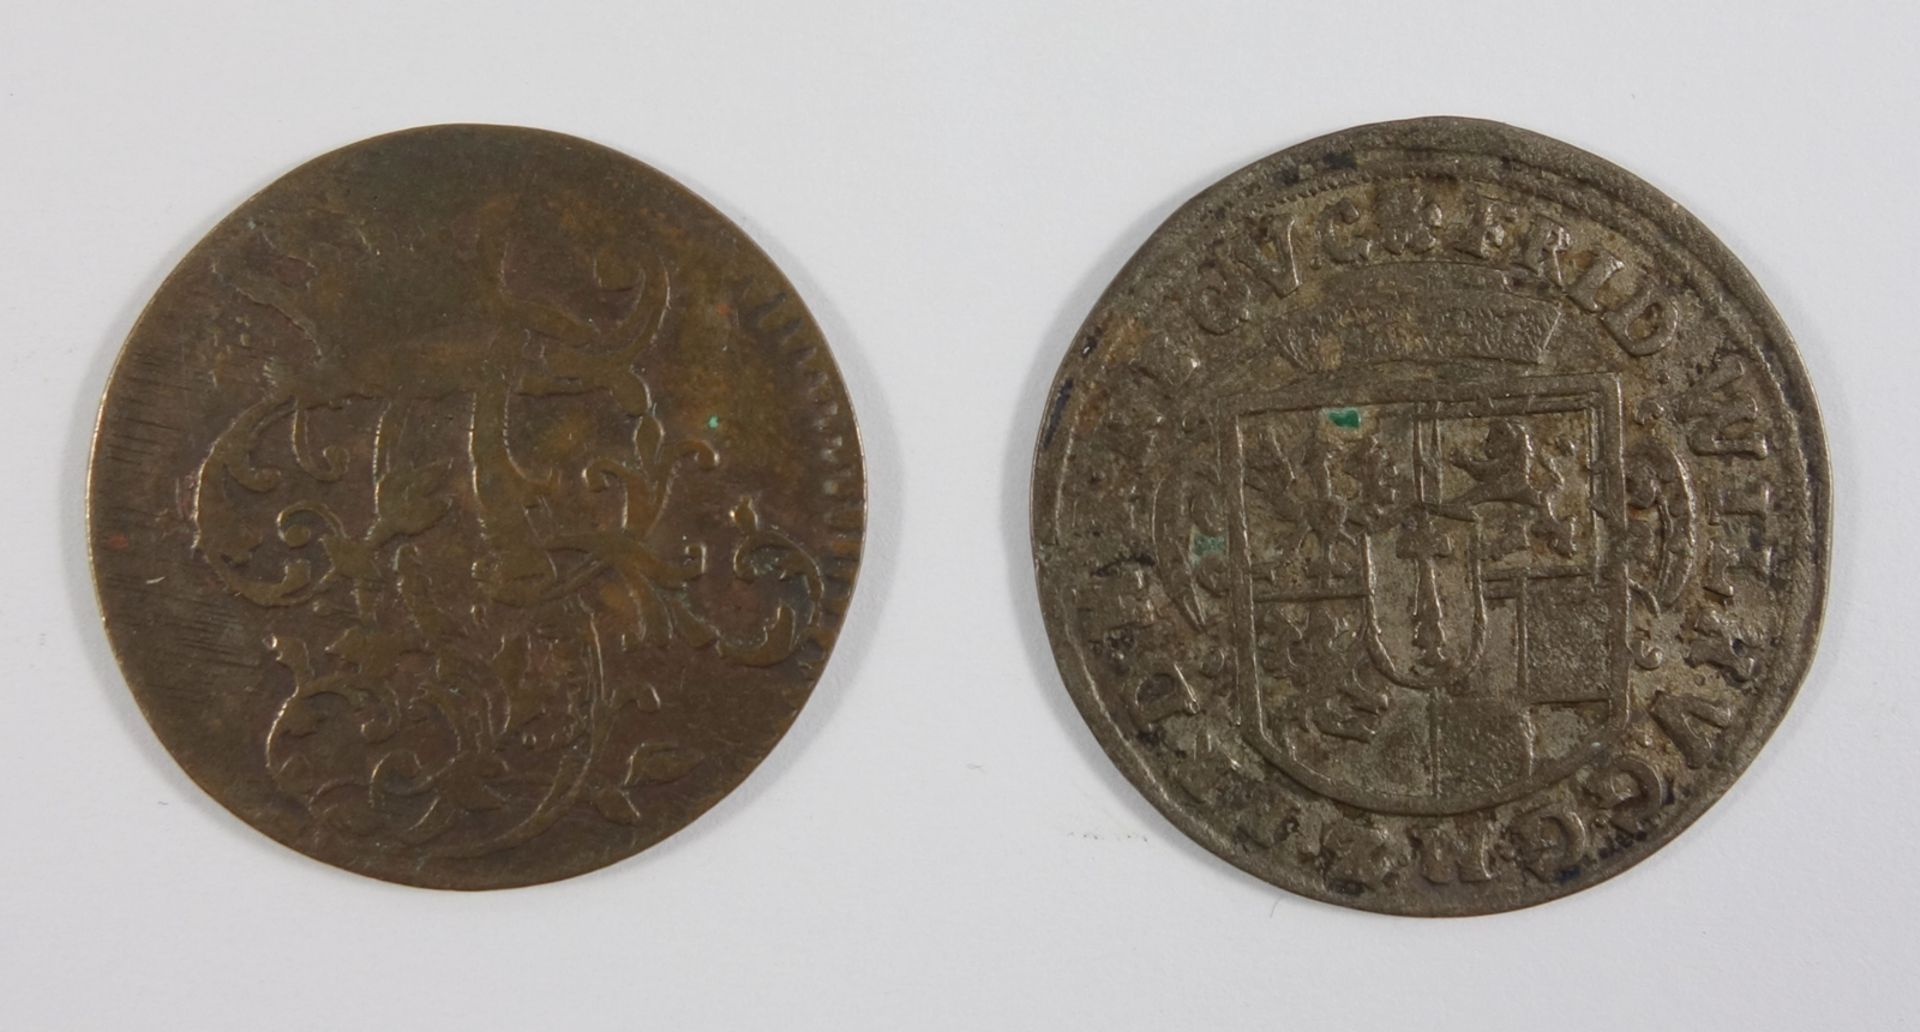 3 Pfennige 1763 und 2 Groschen 1653, König Friedrich, Brandenburg Preussen, s3 pfennig, 1763 and 2